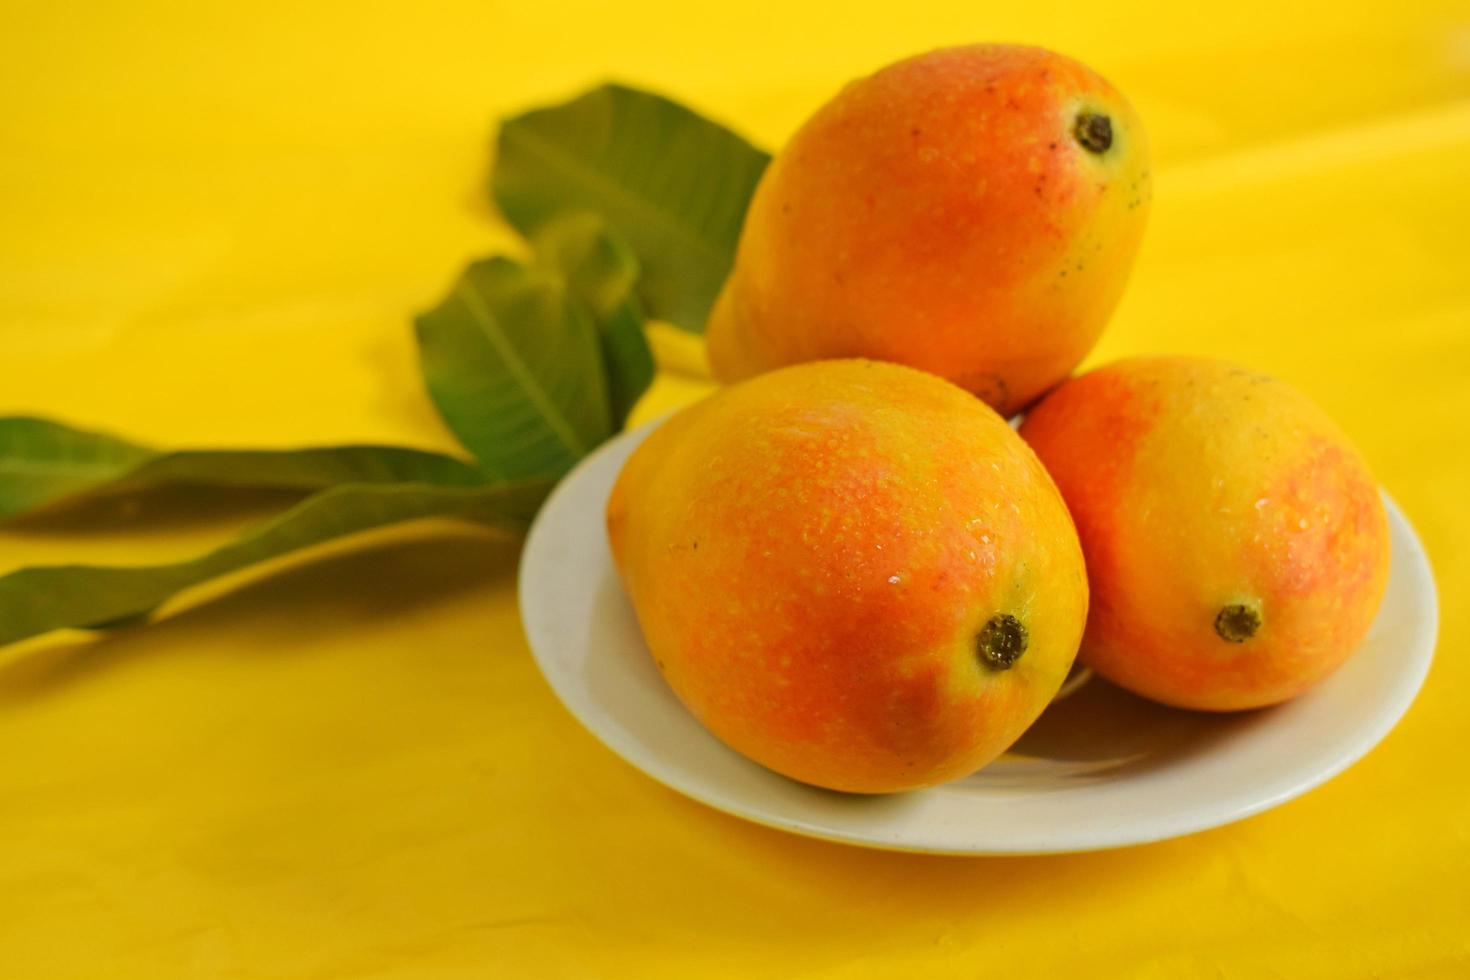 färsk mango frukt på gul bakgrund foto